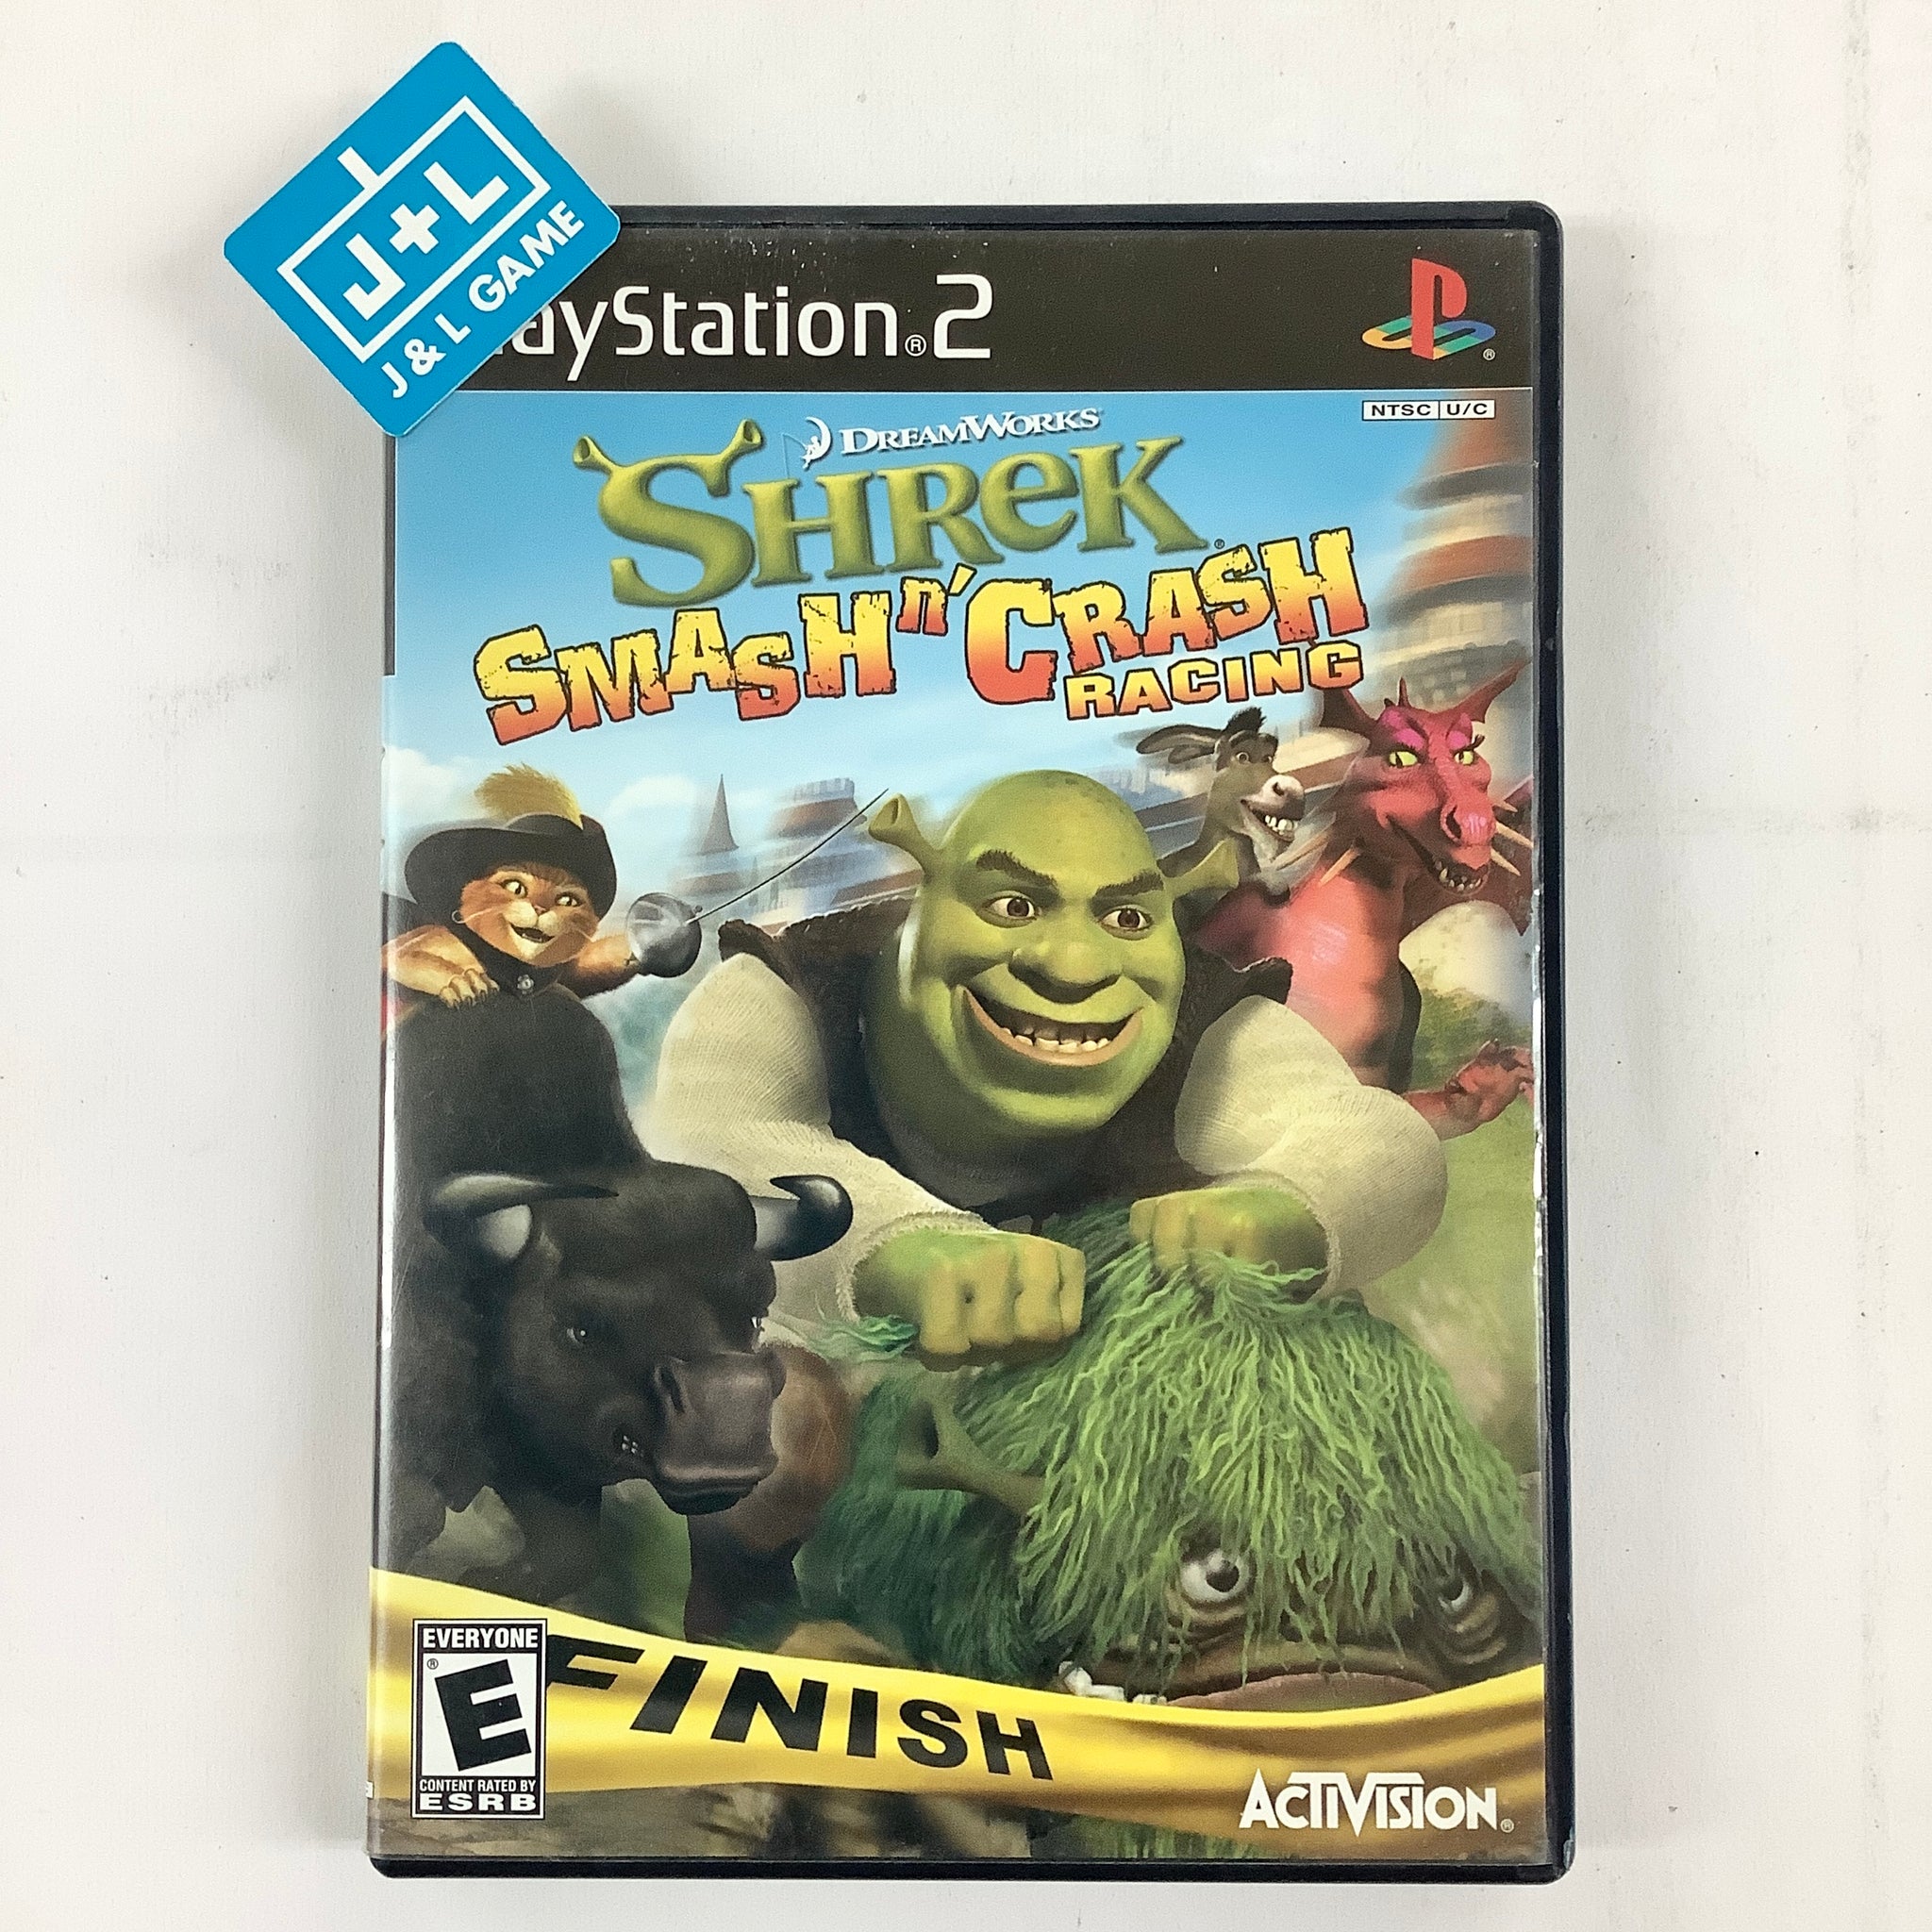 Shrek Smash n' Crash Racing Playstation 2 